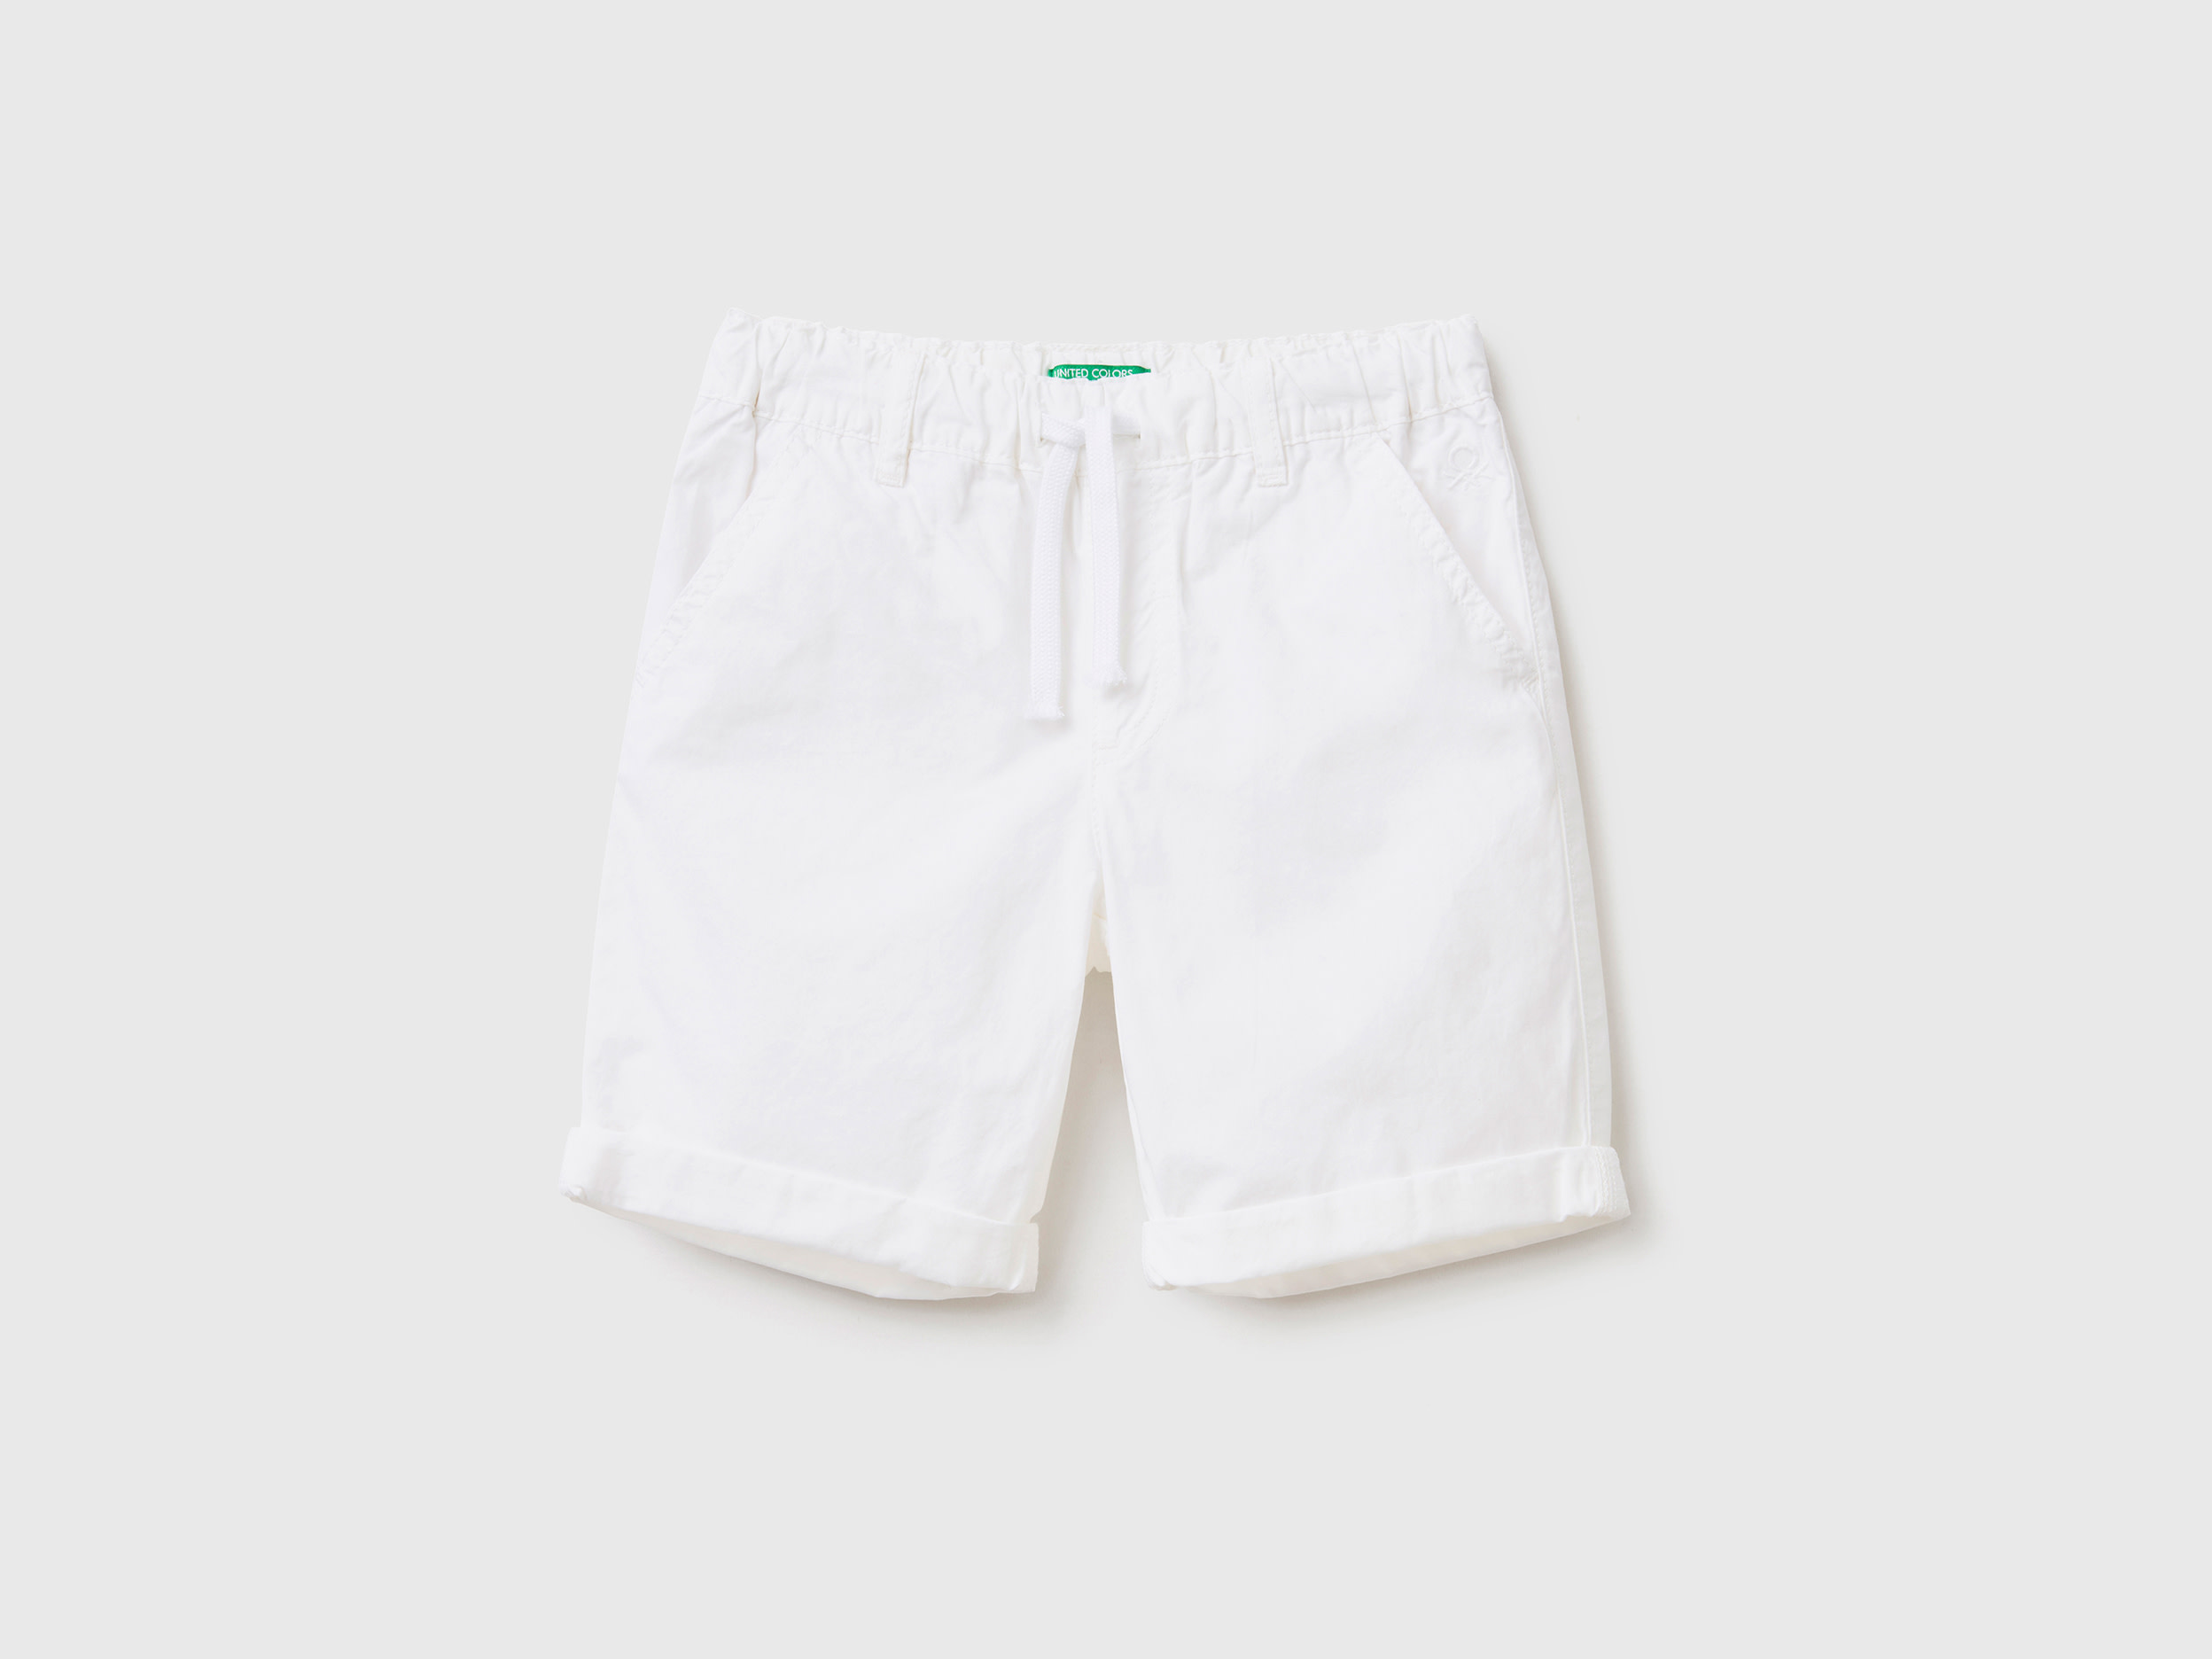 Benetton, 100% Cotton Shorts With Drawstring, size 5-6, White, Kids